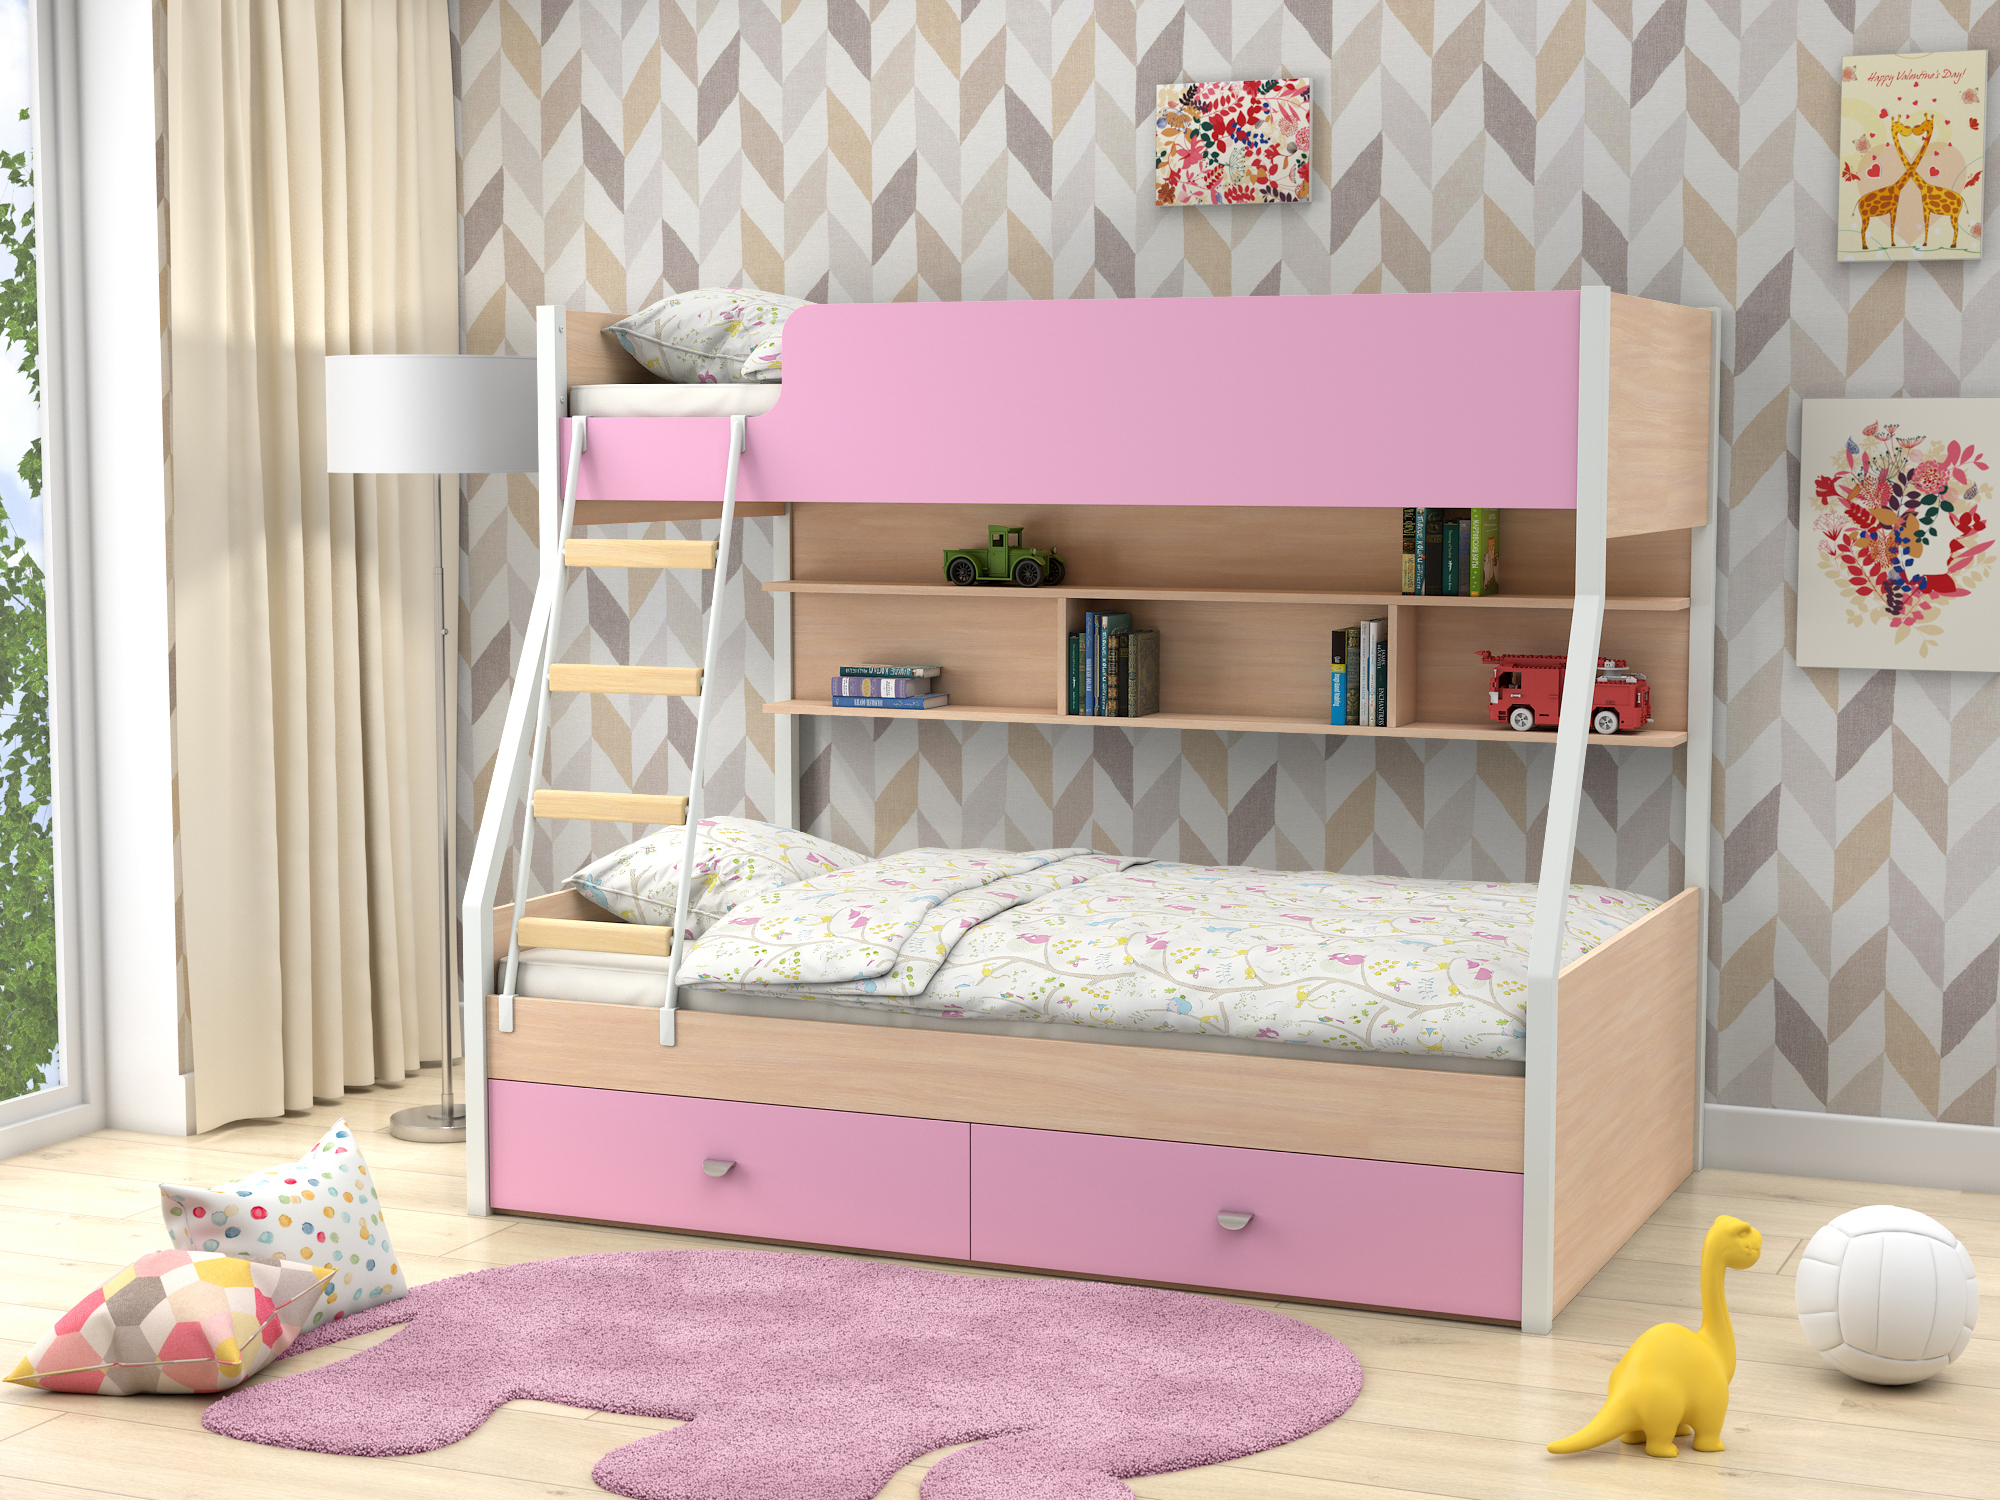 Двухъярусная кровать Golden Kids-3 (90х190/120х190) Розовый, Белый, Бежевый, ЛДСП двухъярусная кровать golden kids 3 90х190 120х190 зеленый бежевый лдсп